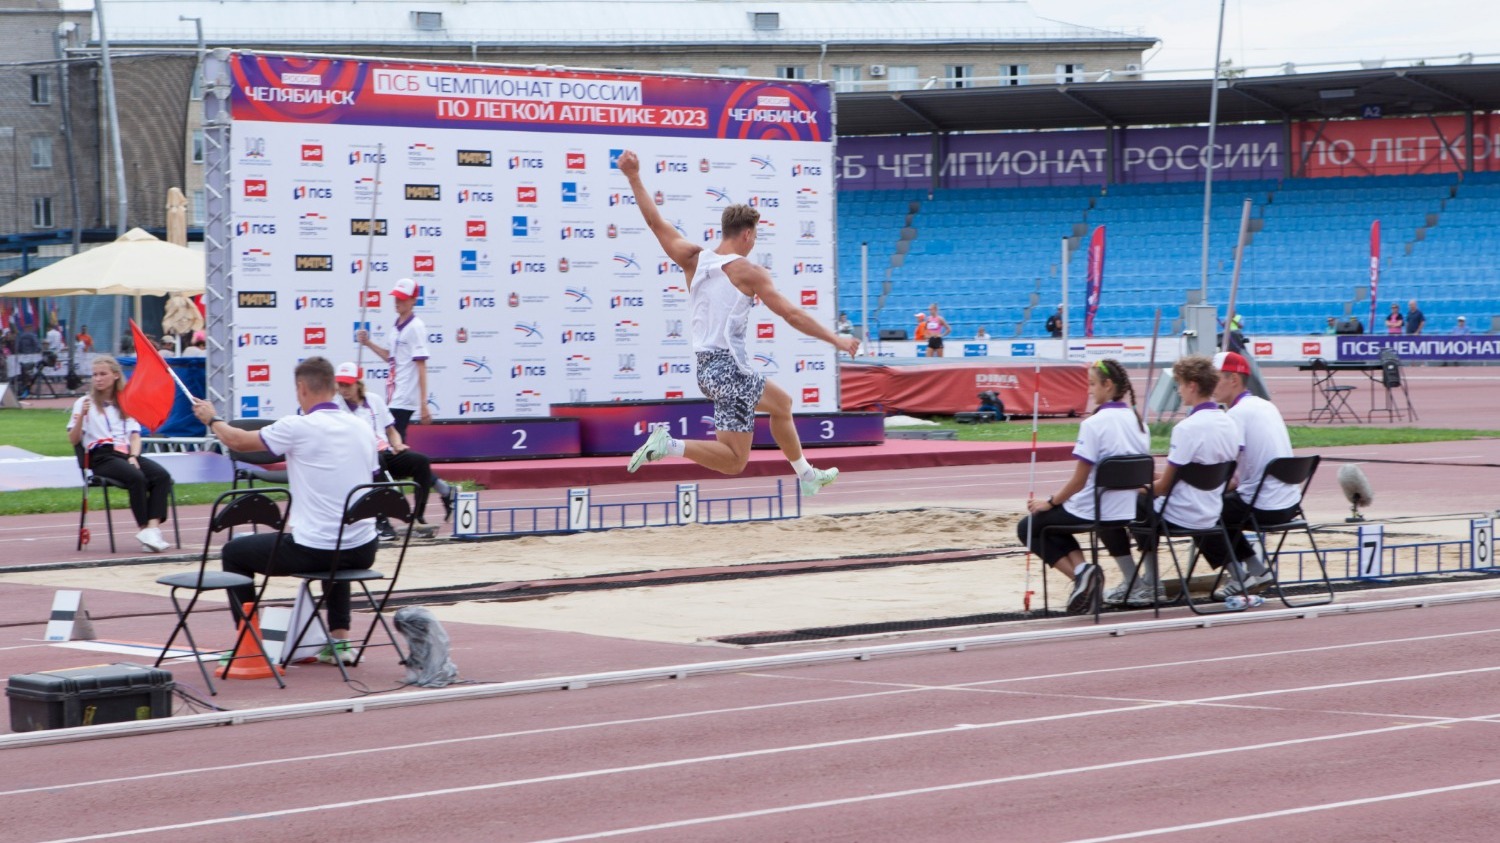 Лучшие спортсмены прыгают далеко на чемпионате России по легкой атлетике, который проходит в Челябинске